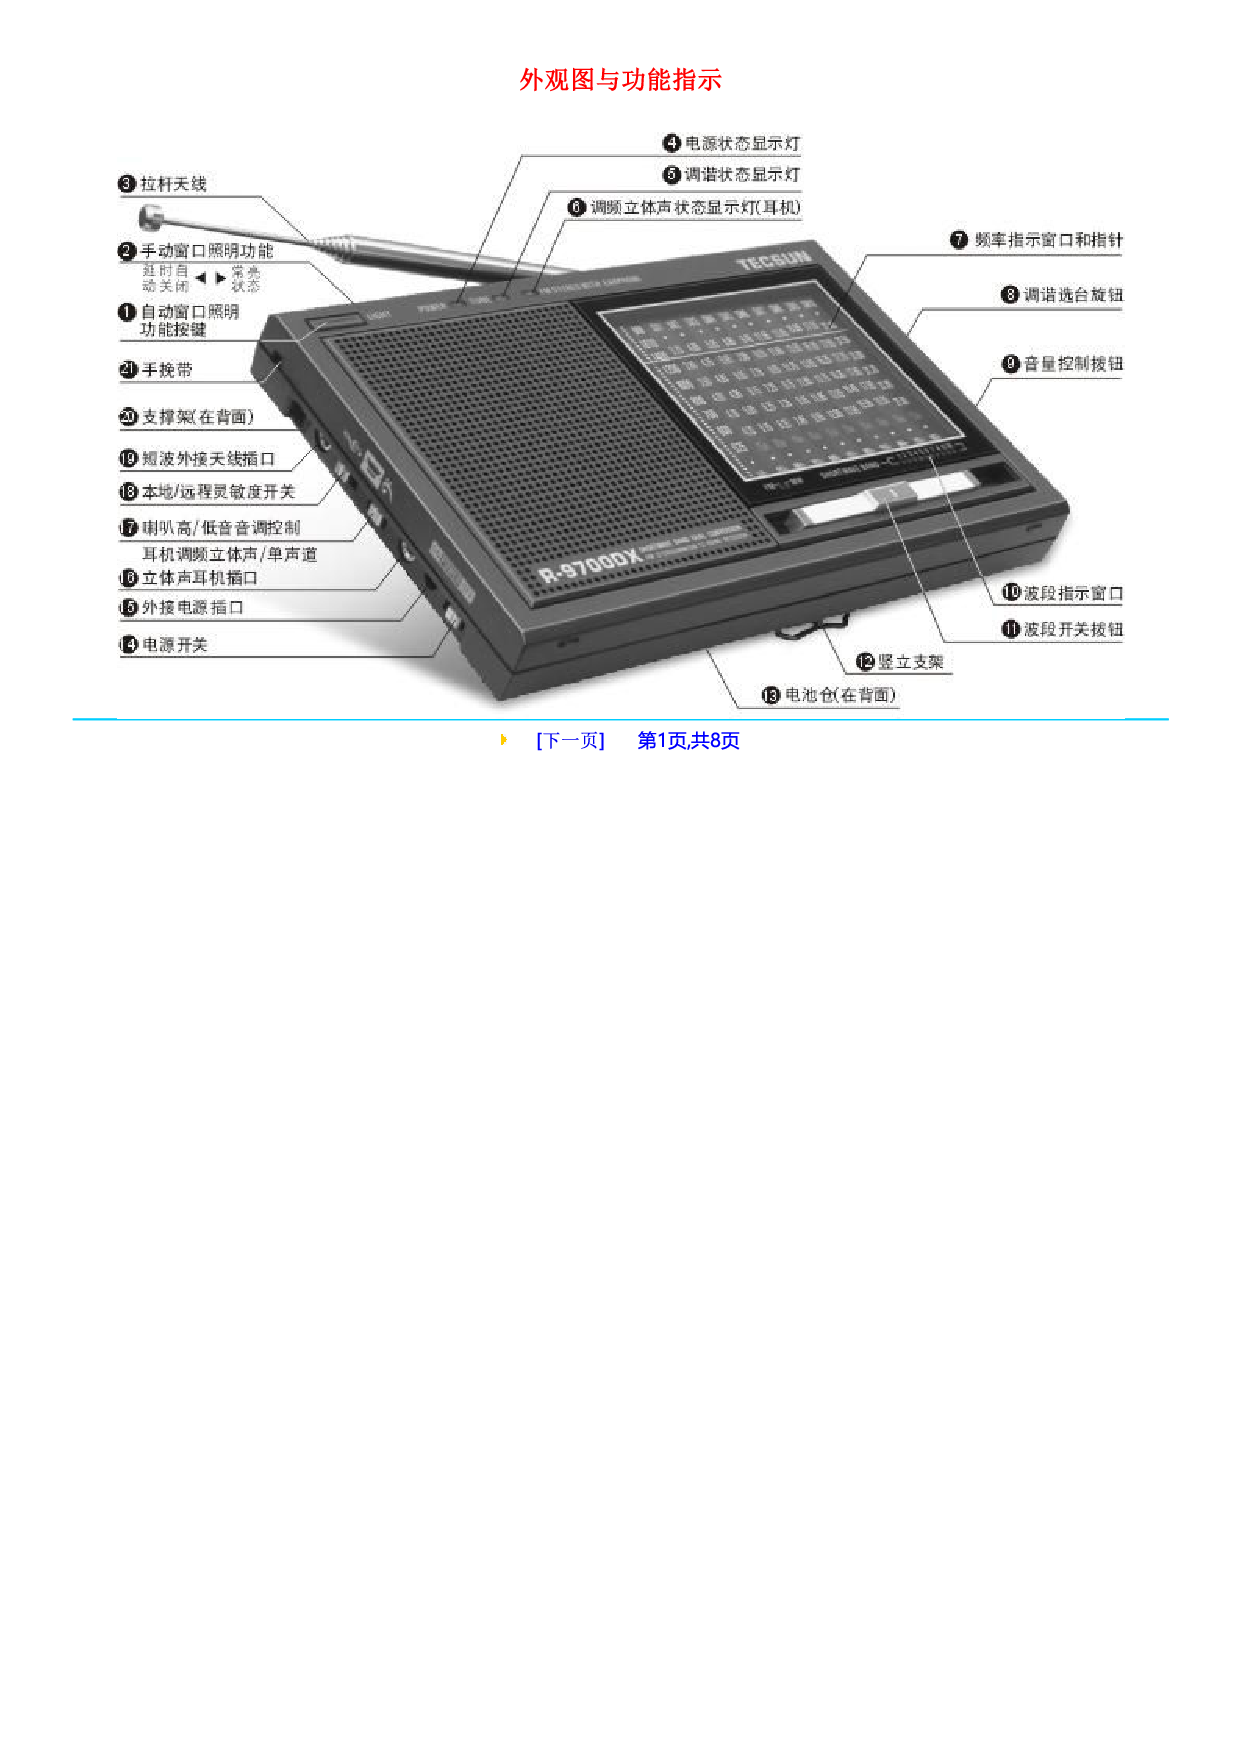 德生 Tecsun R-9700DX 使用说明书 封面